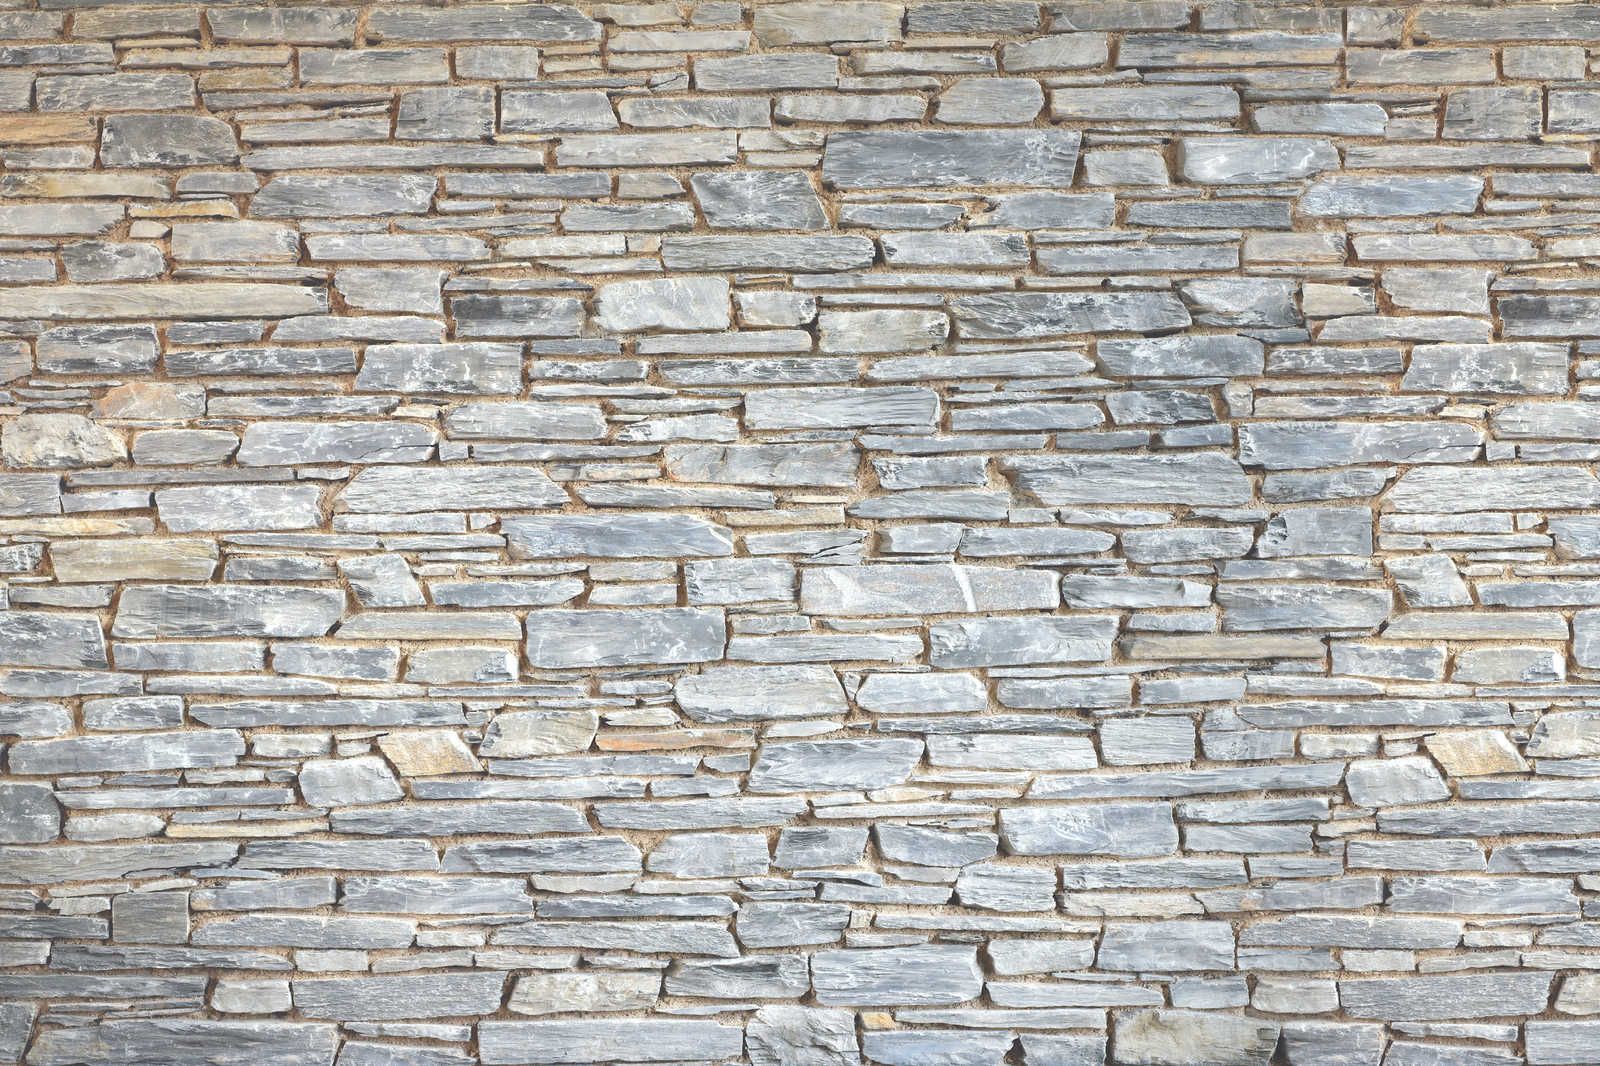             Mur de pierre toile claire aspect pierre naturelle grise - 0,90 m x 0,60 m
        